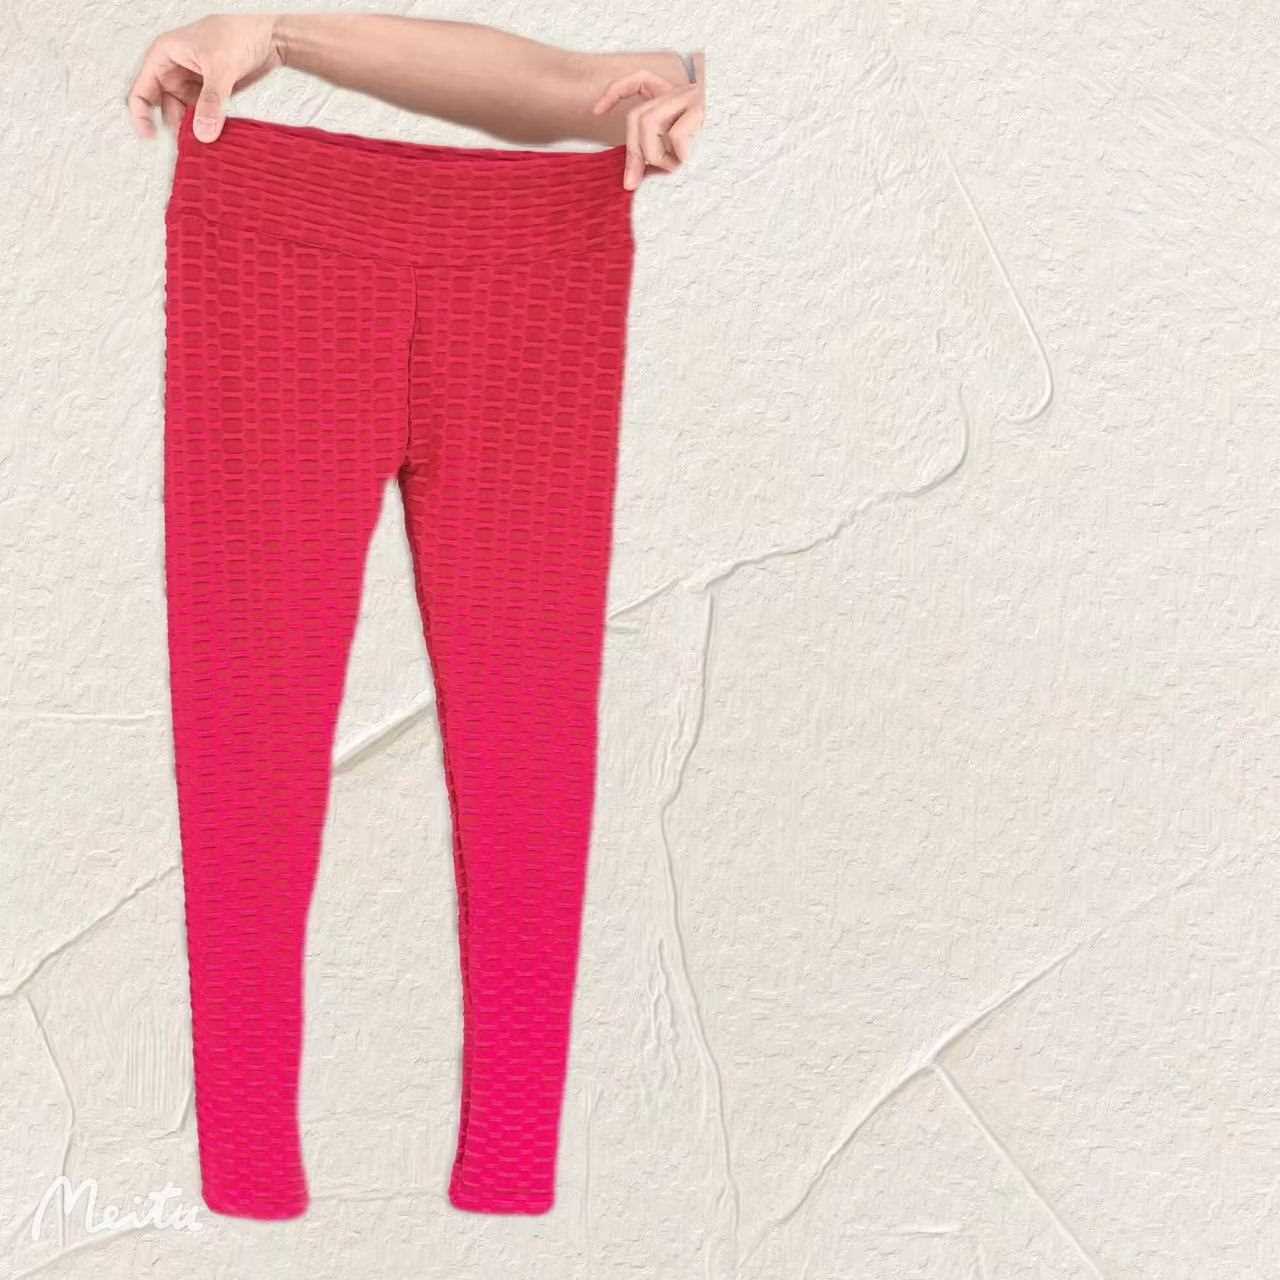 Red Large TIK TOK Leggings Ladies Women Gym Lift High Waist Fitness Yoga Hot Pants